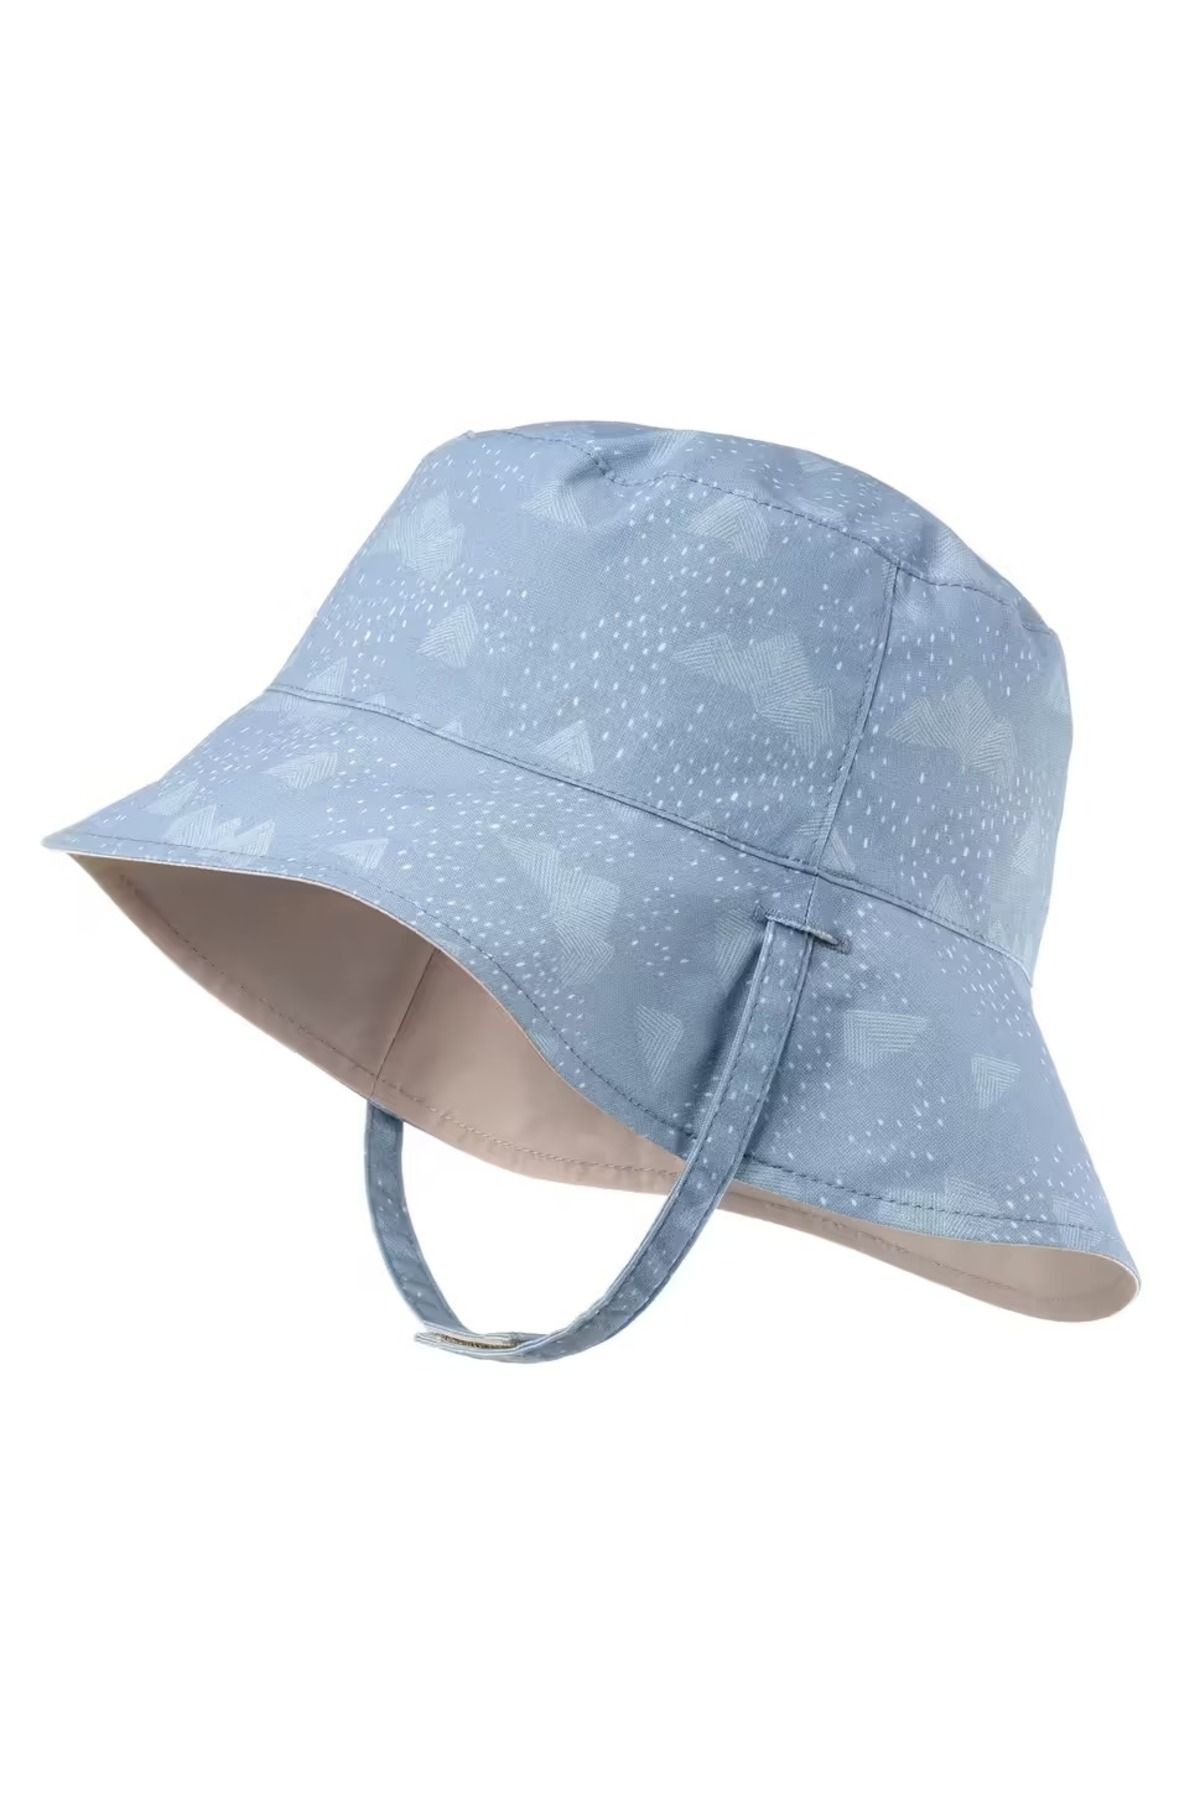 Decathlon Çocuk UV Korumalı Outdoor Şapka - MH100